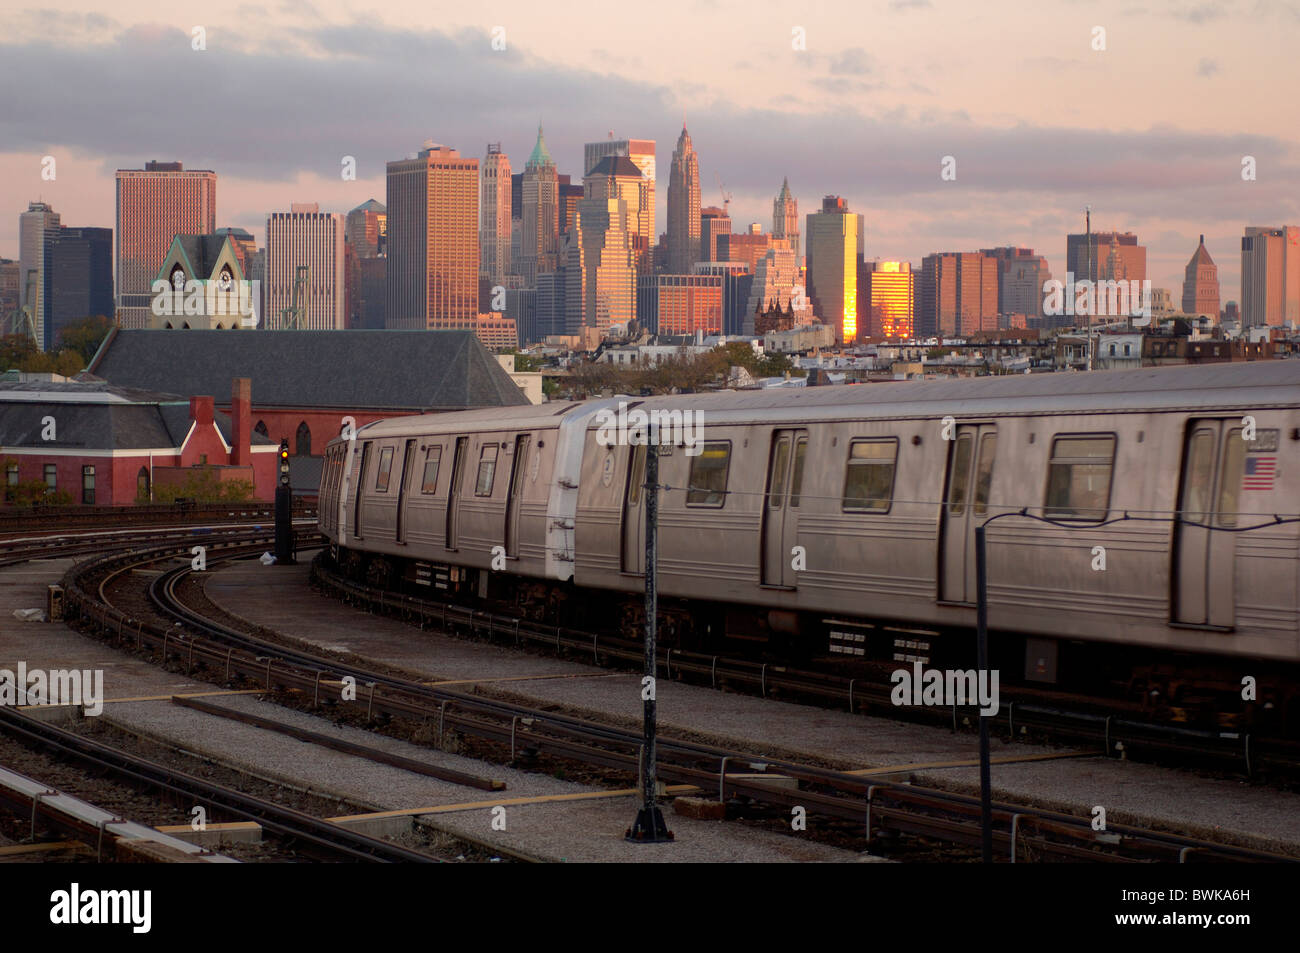 Métro Métro le transport de surface transports ville ville Downtown Manhattan skyline dusk humeur twi Banque D'Images